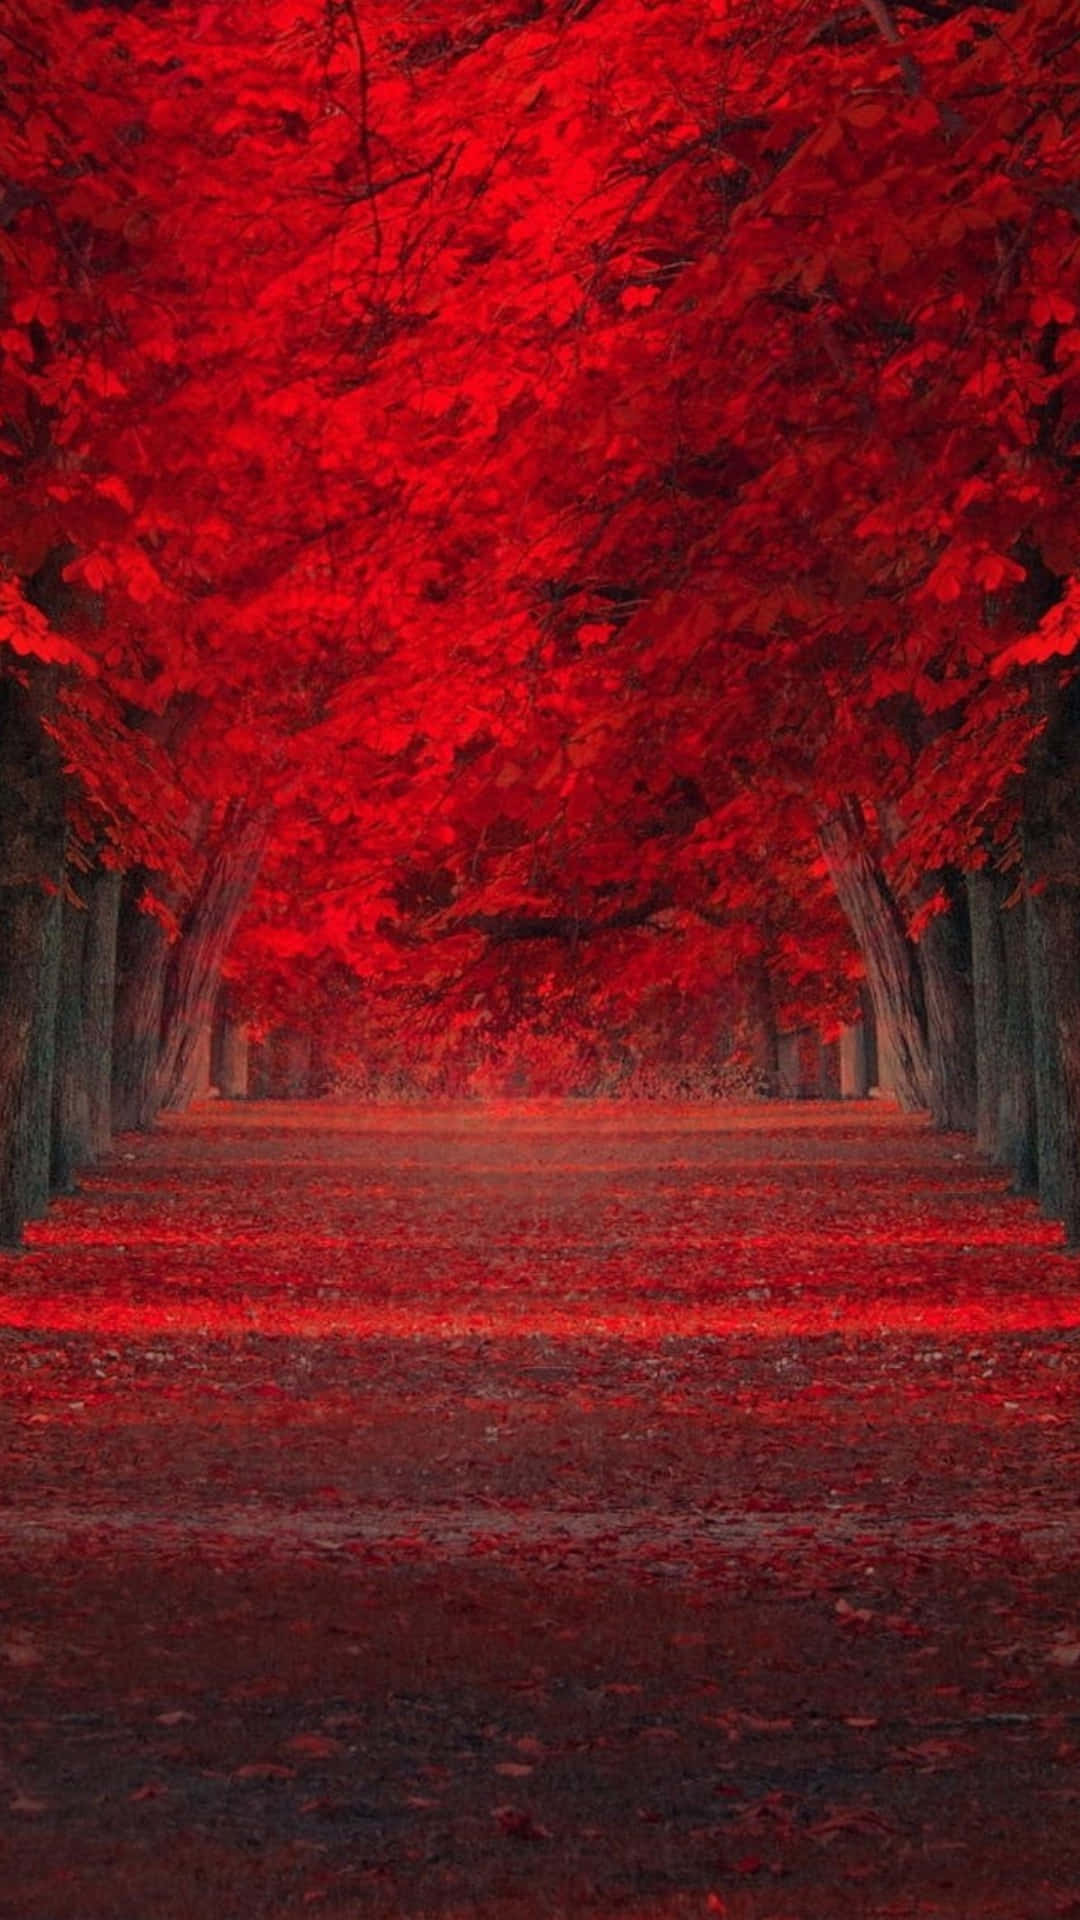 Folhasvermelhas De Outono Na Floresta. Papel de Parede